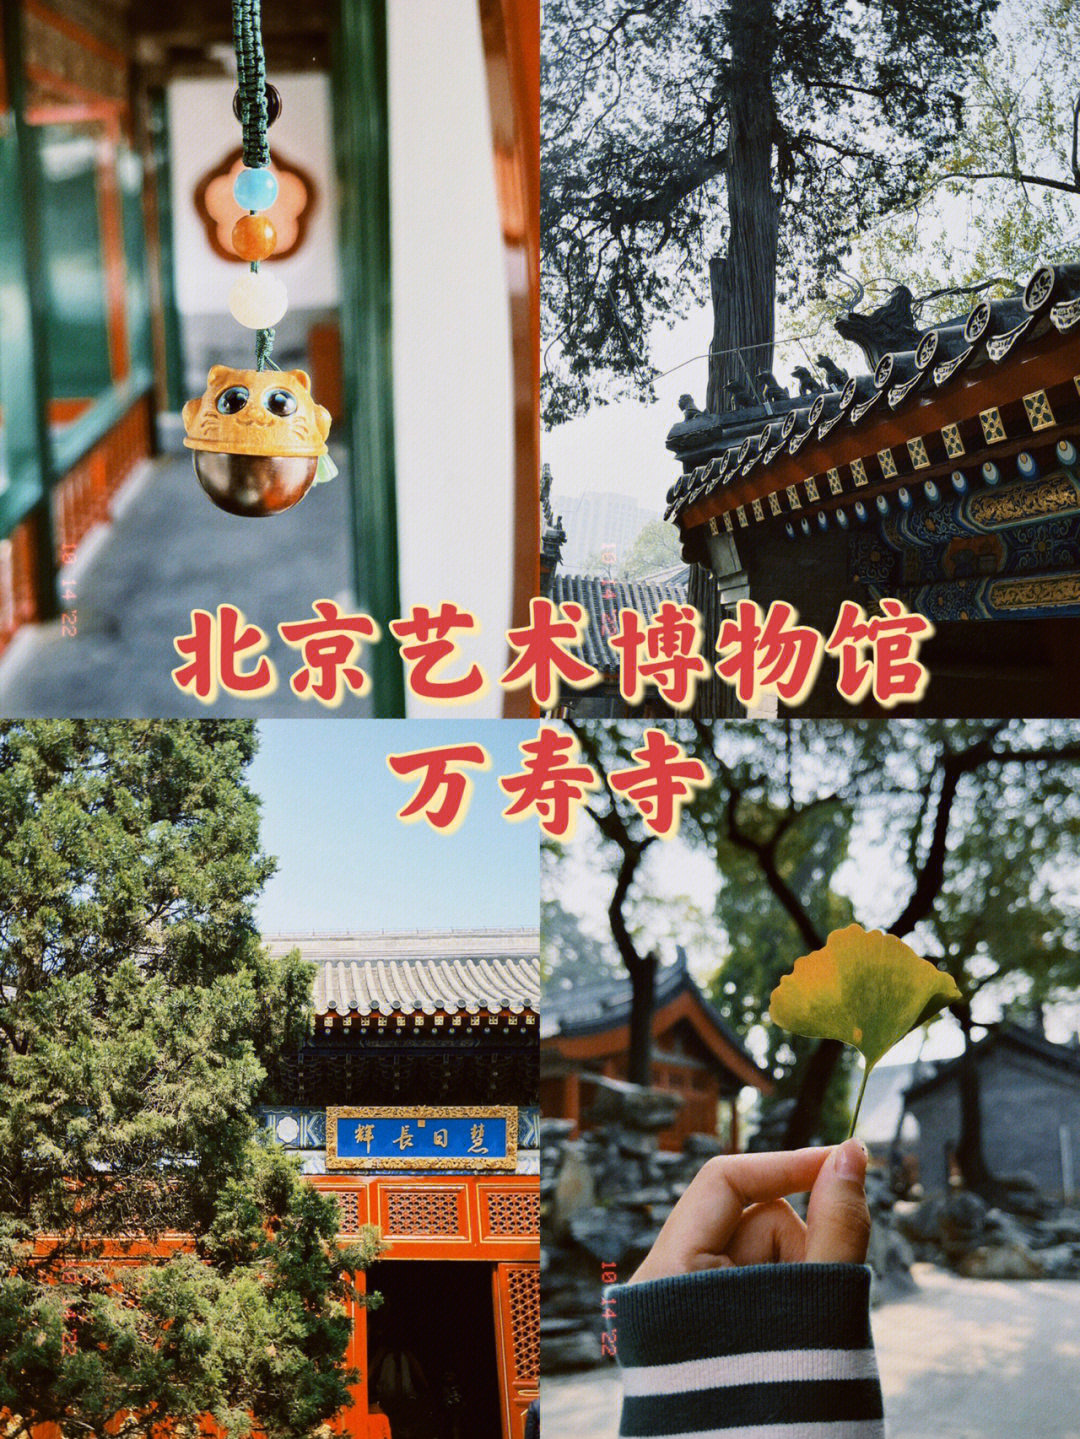 北京艺术博物馆61万寿寺